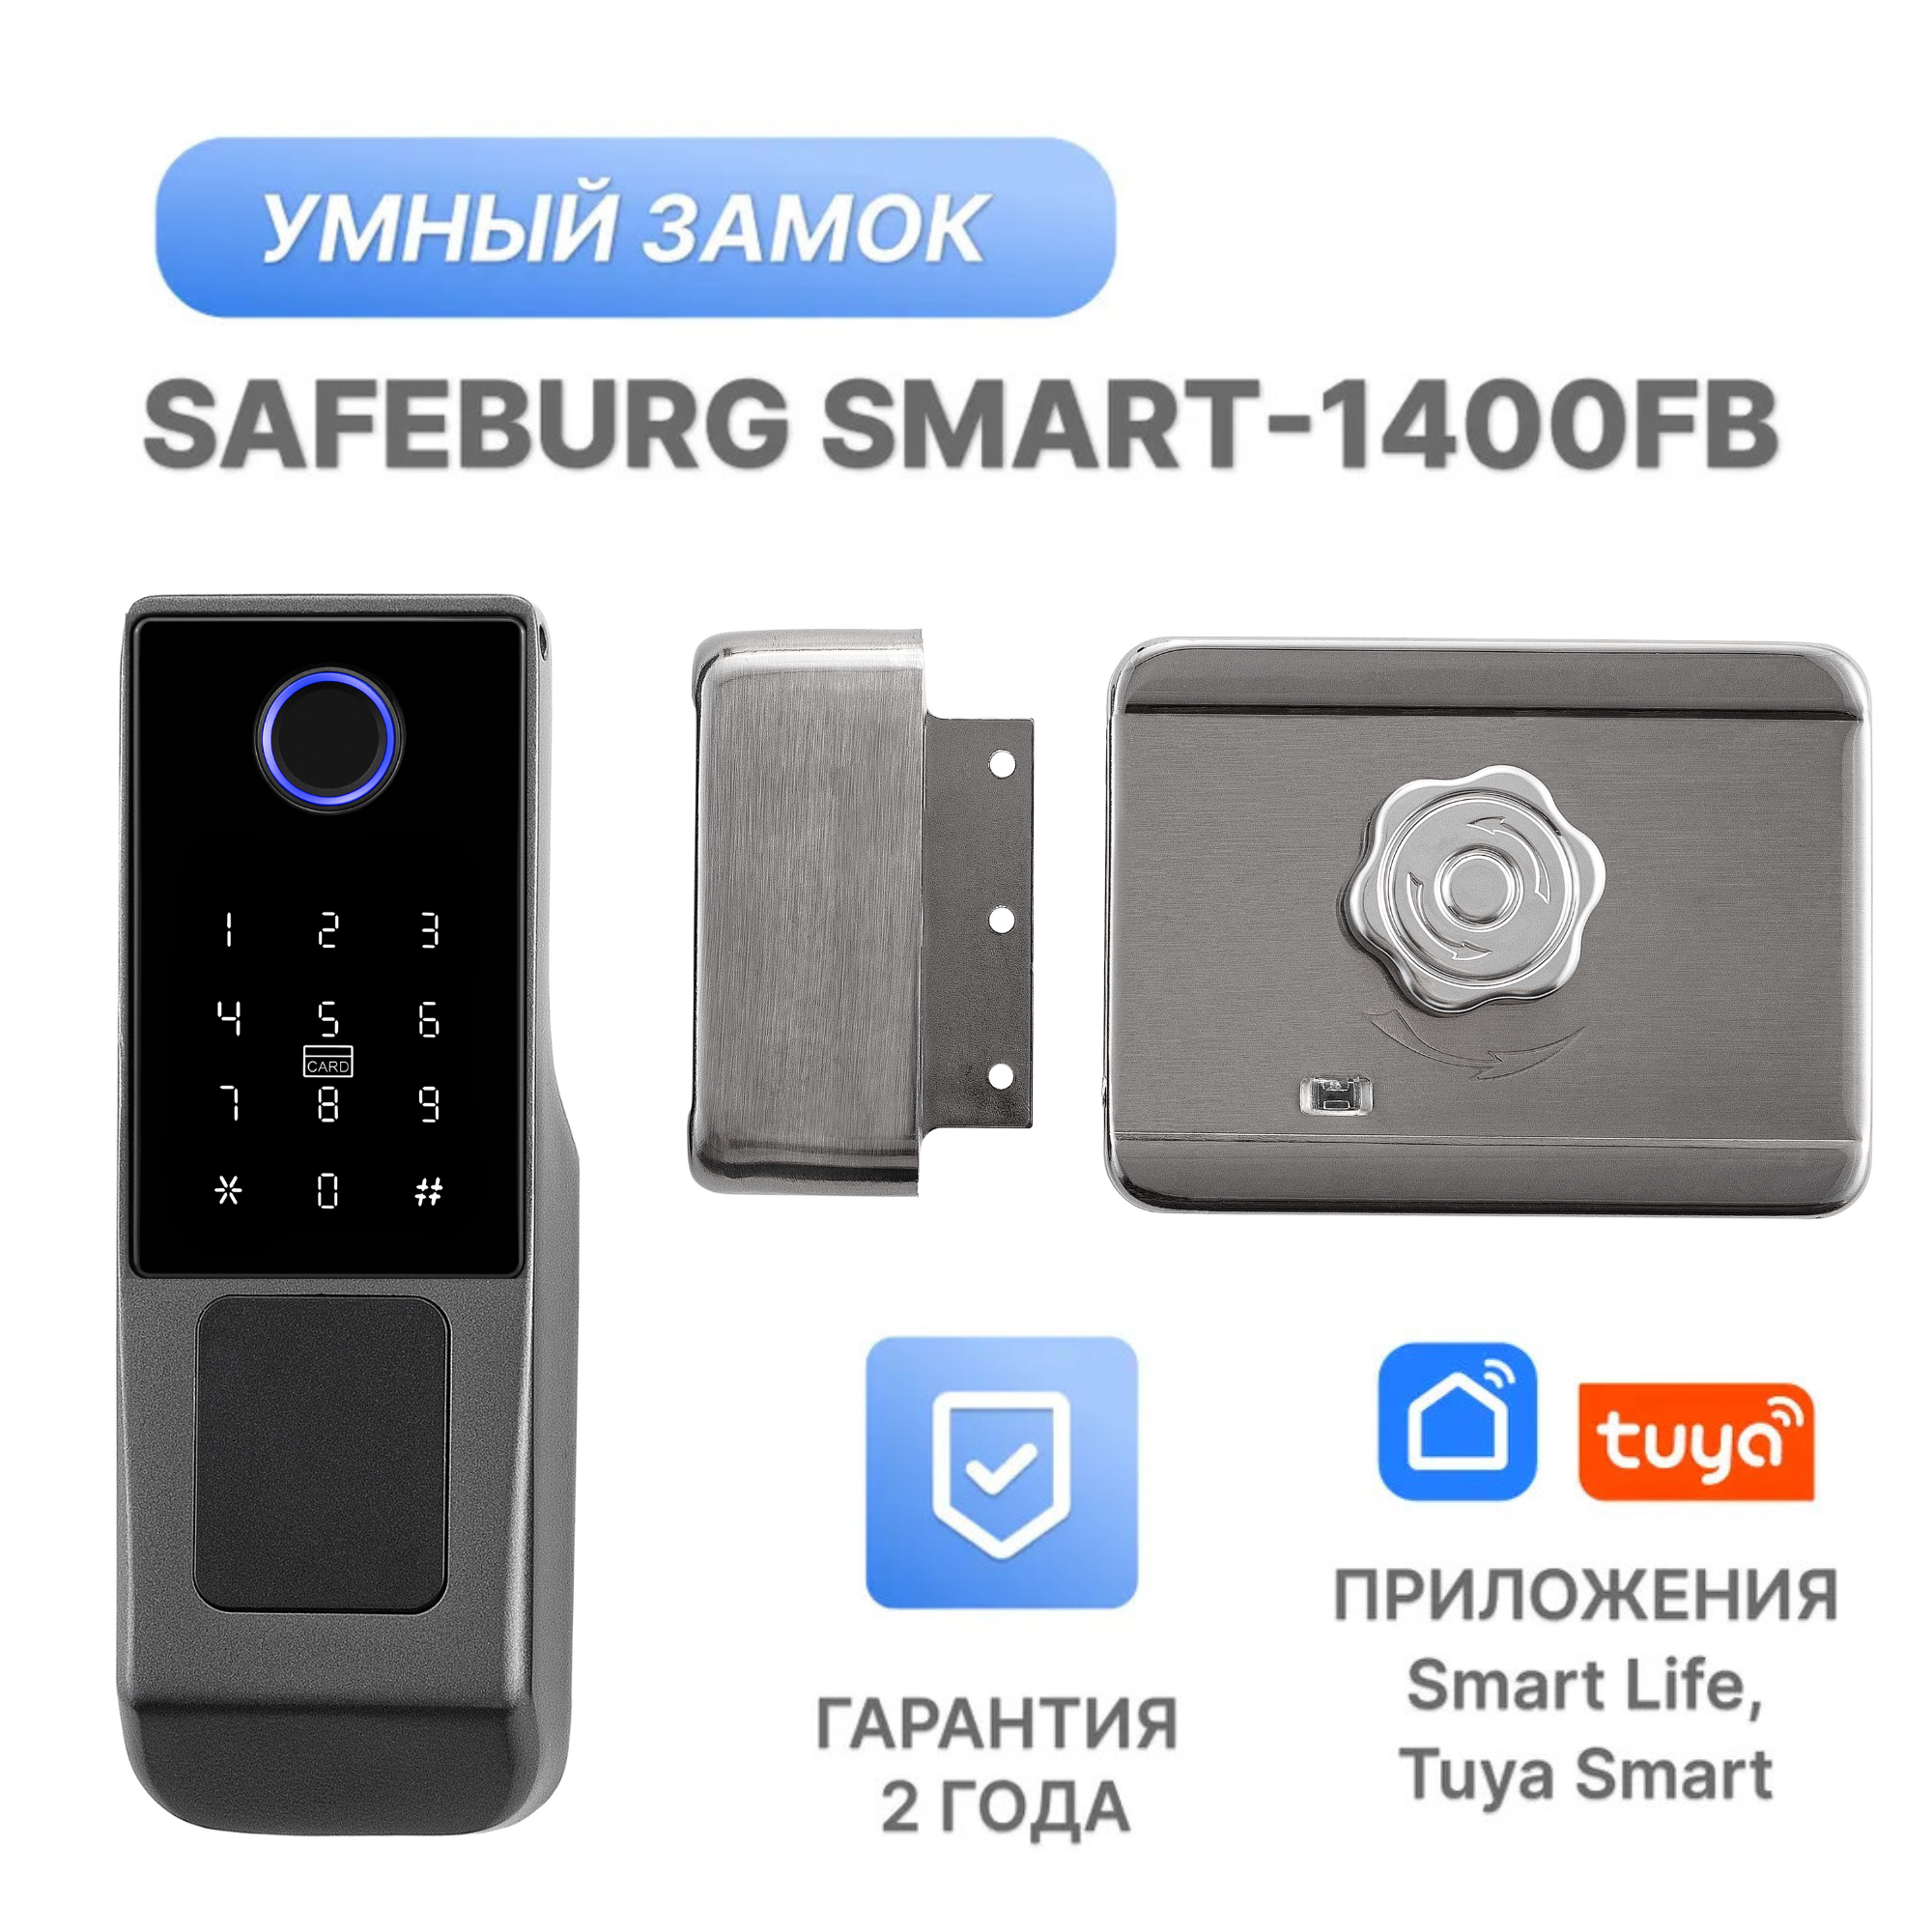 Умный электронный дверной замок с отпечатком пальца SAFEBURG SMART-1400FB 156x59x25 мм умный замок safeburg smart 1800 приложение tuya биометрический сканер отпечатка пальца